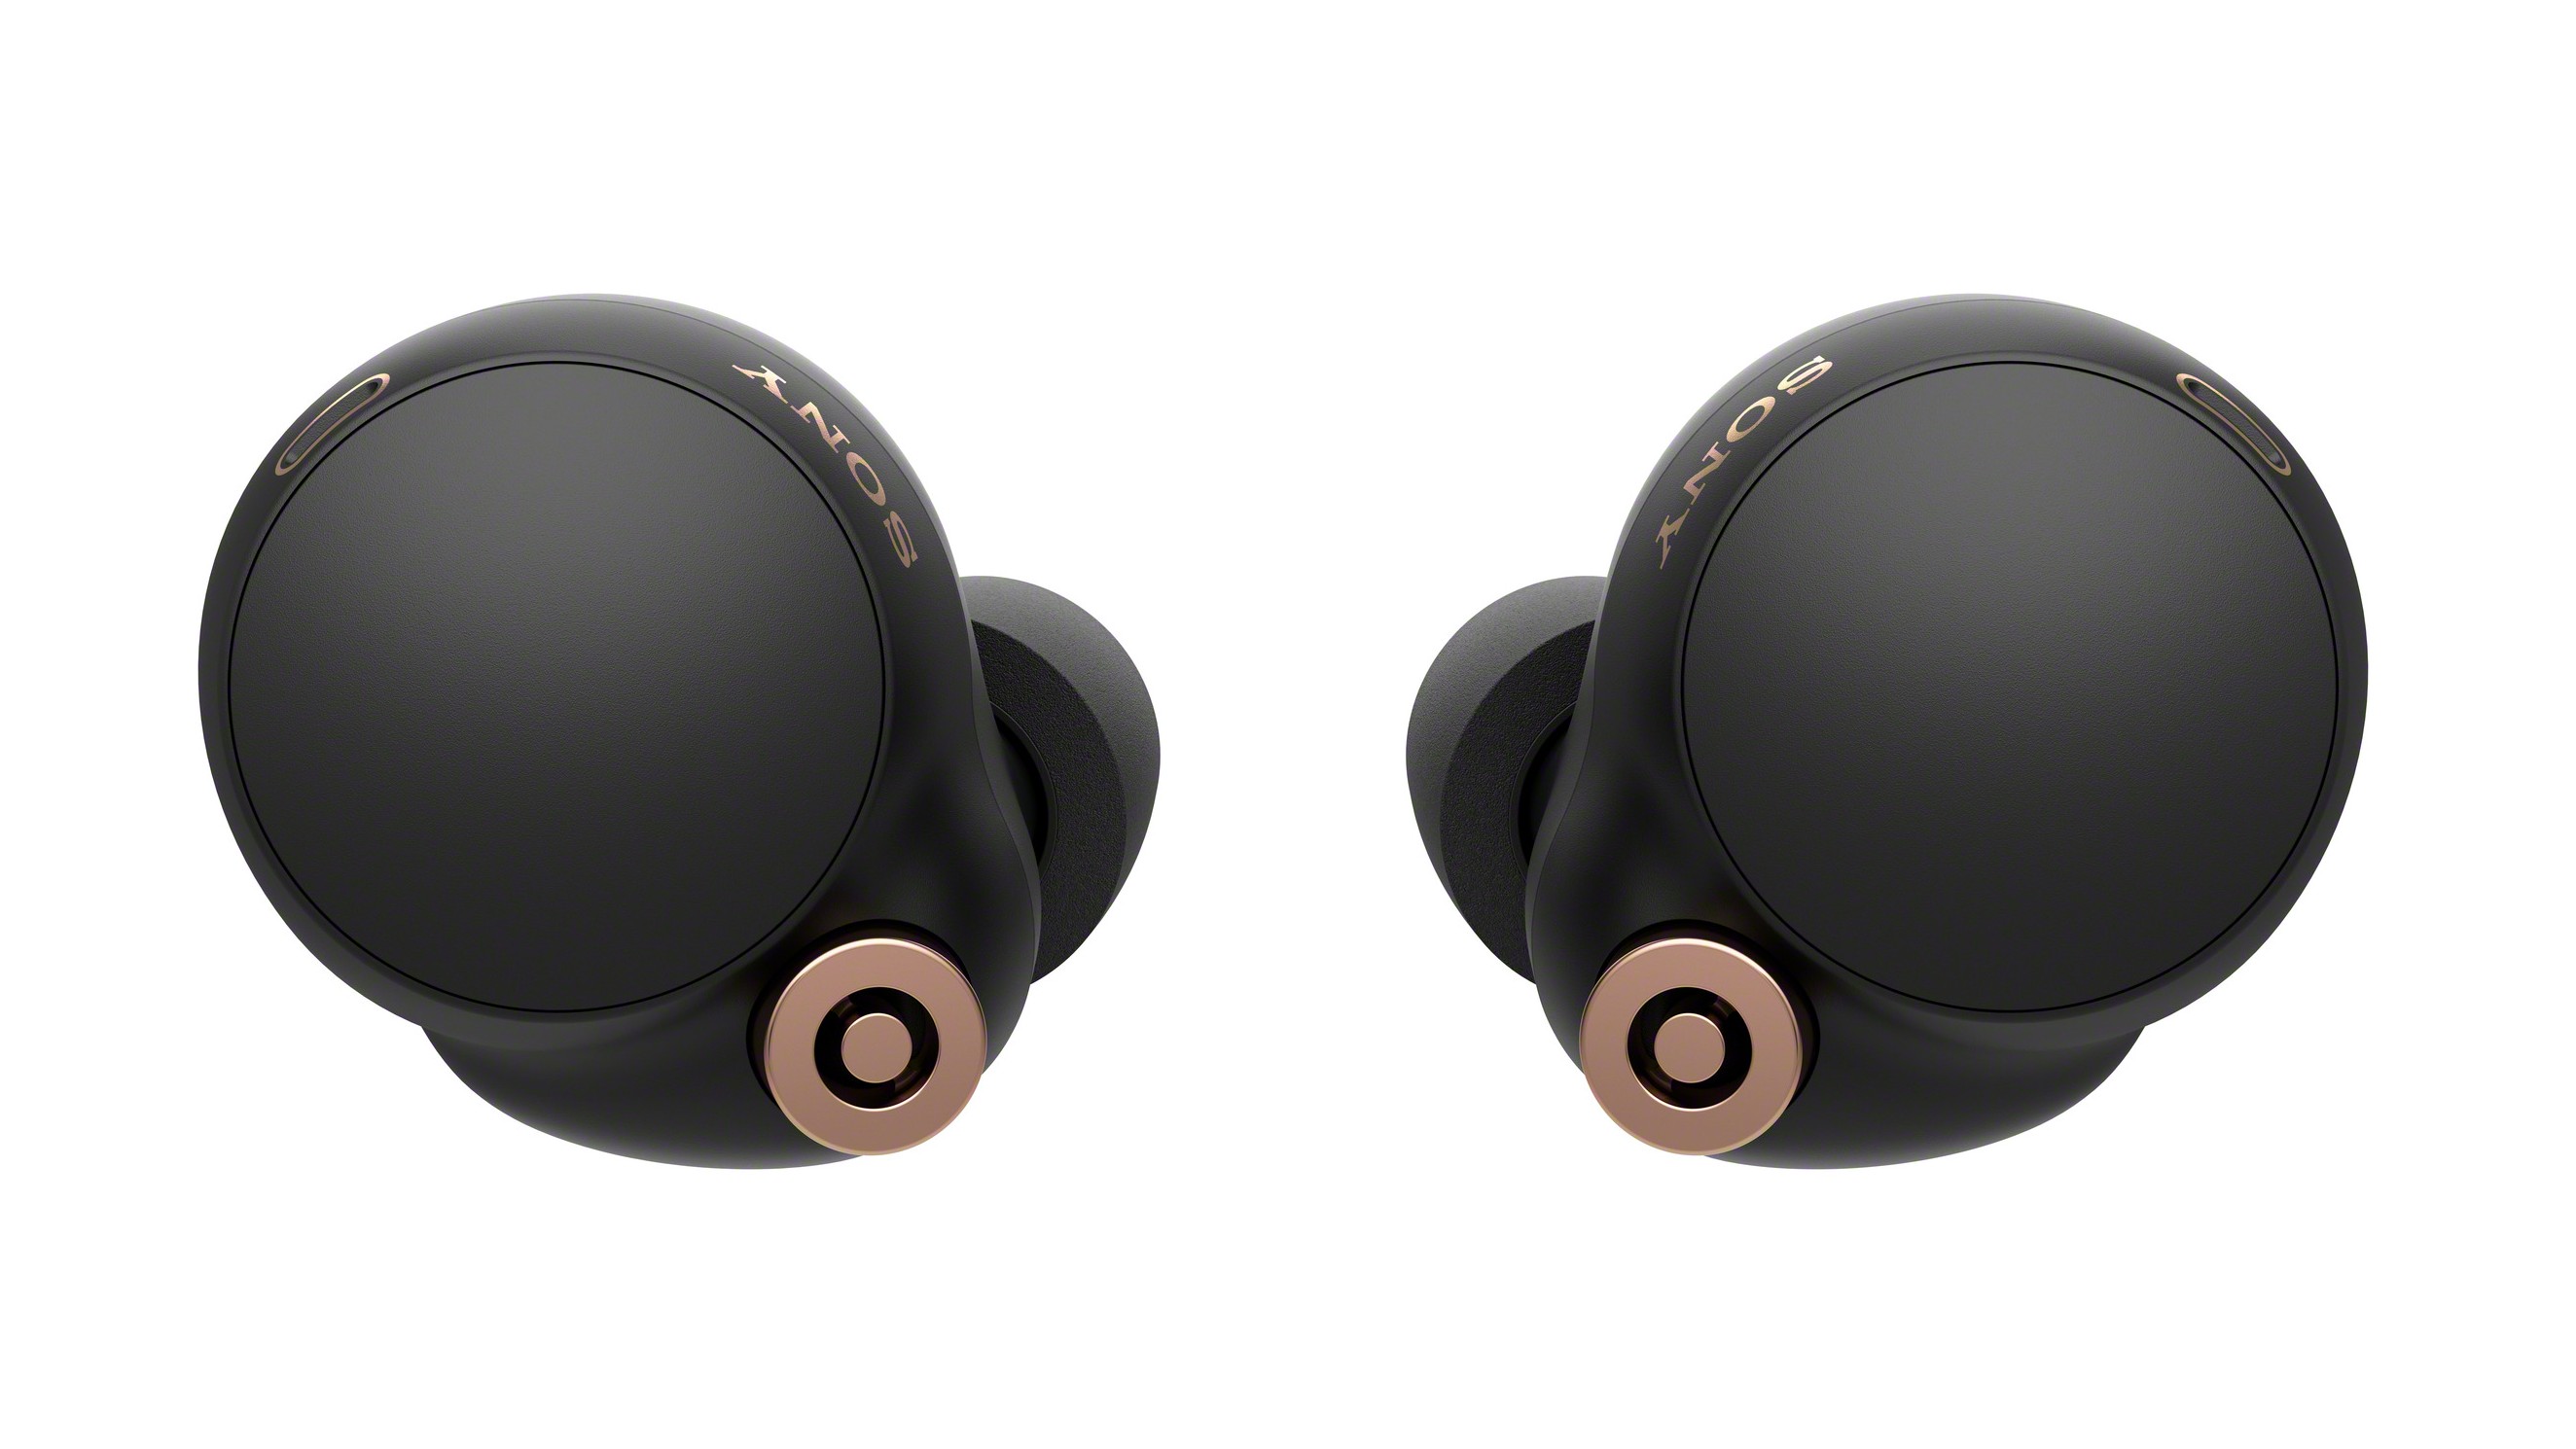 The Sony WF-1000XM4 wireless earbuds in black